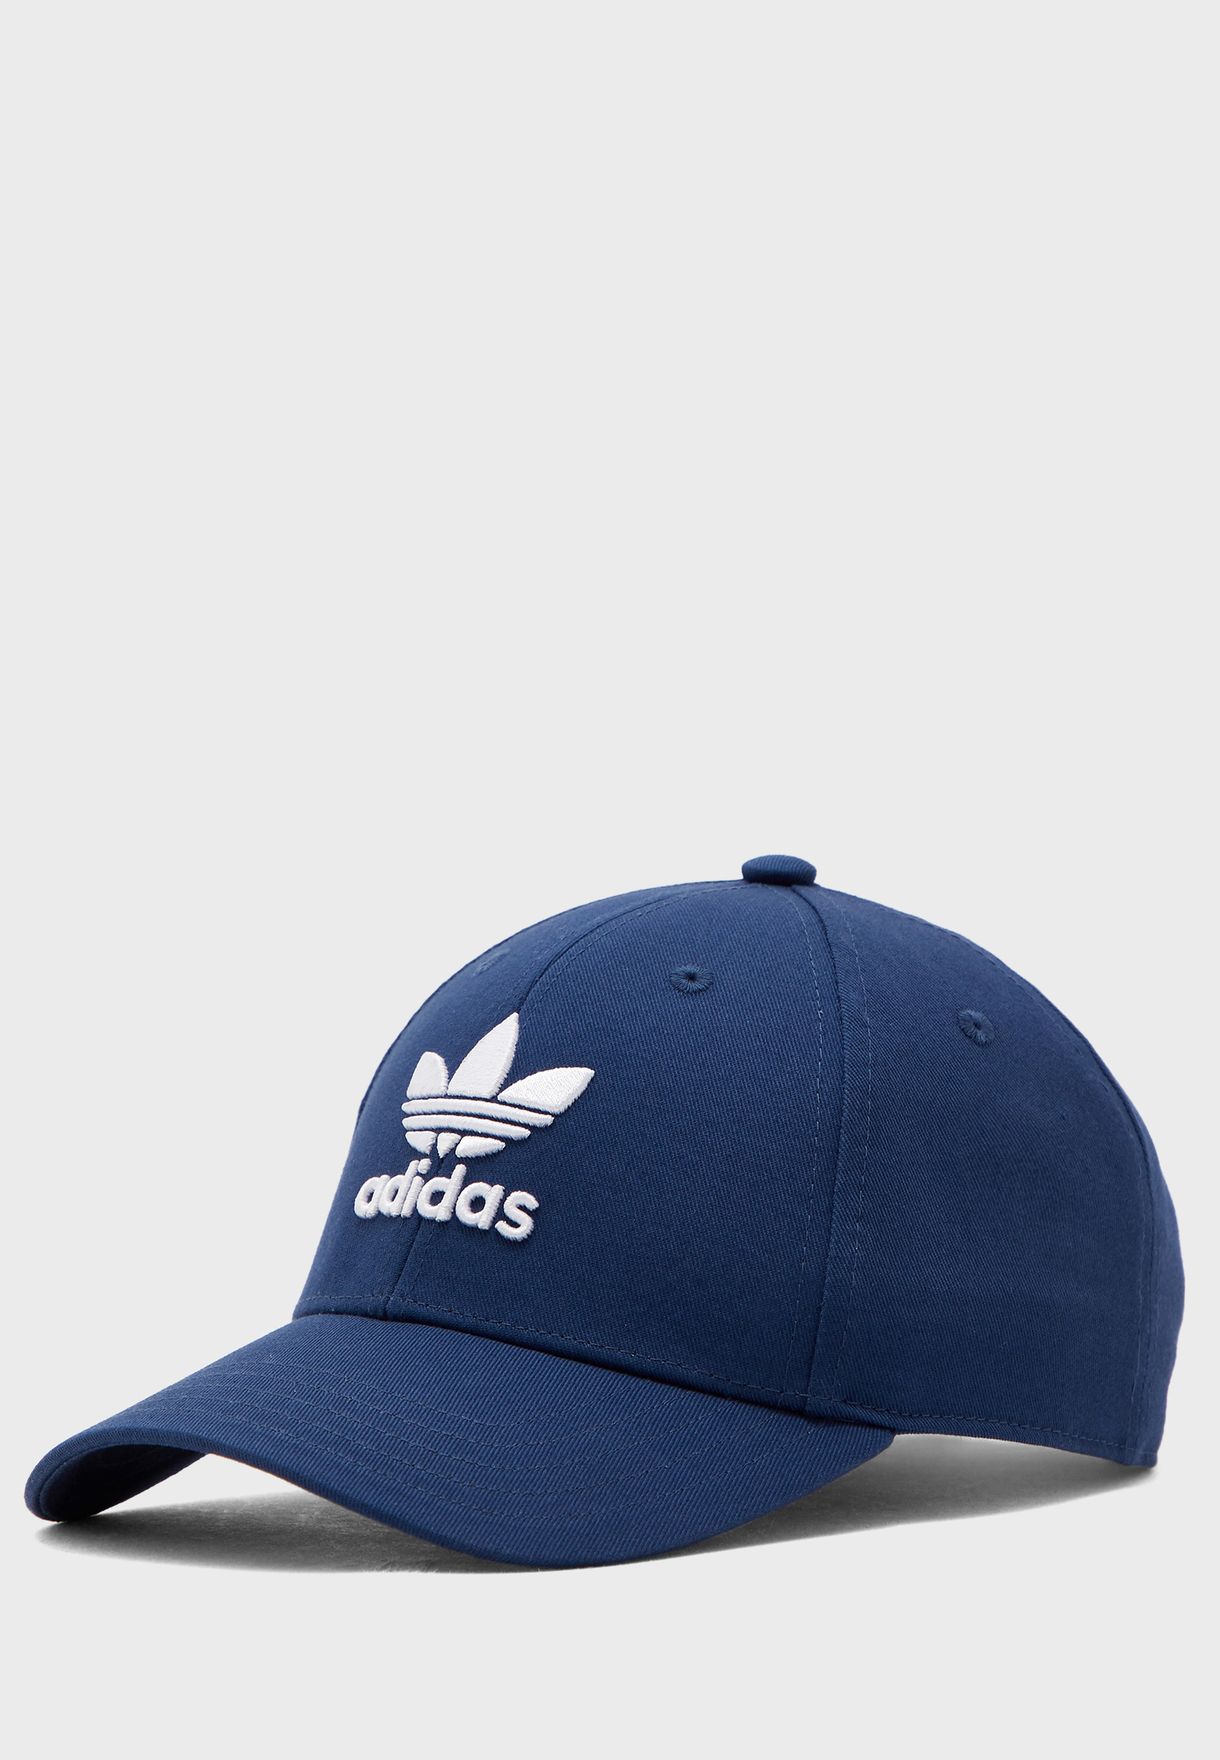 adidas originals classic trefoil cap